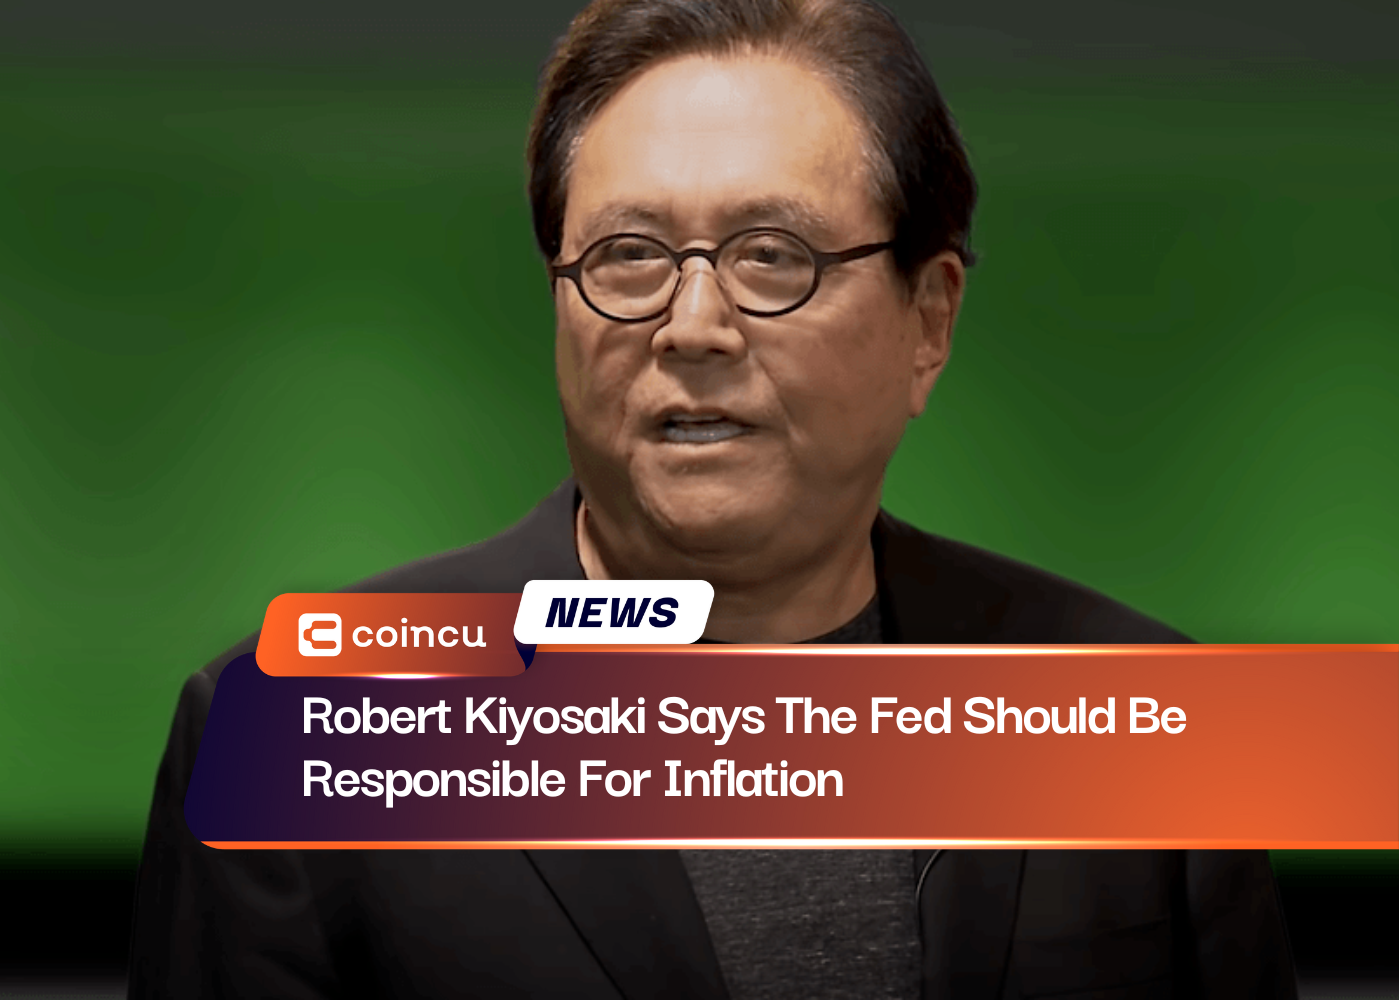 Robert Kiyosaki estime que la Fed devrait être responsable de l'inflation